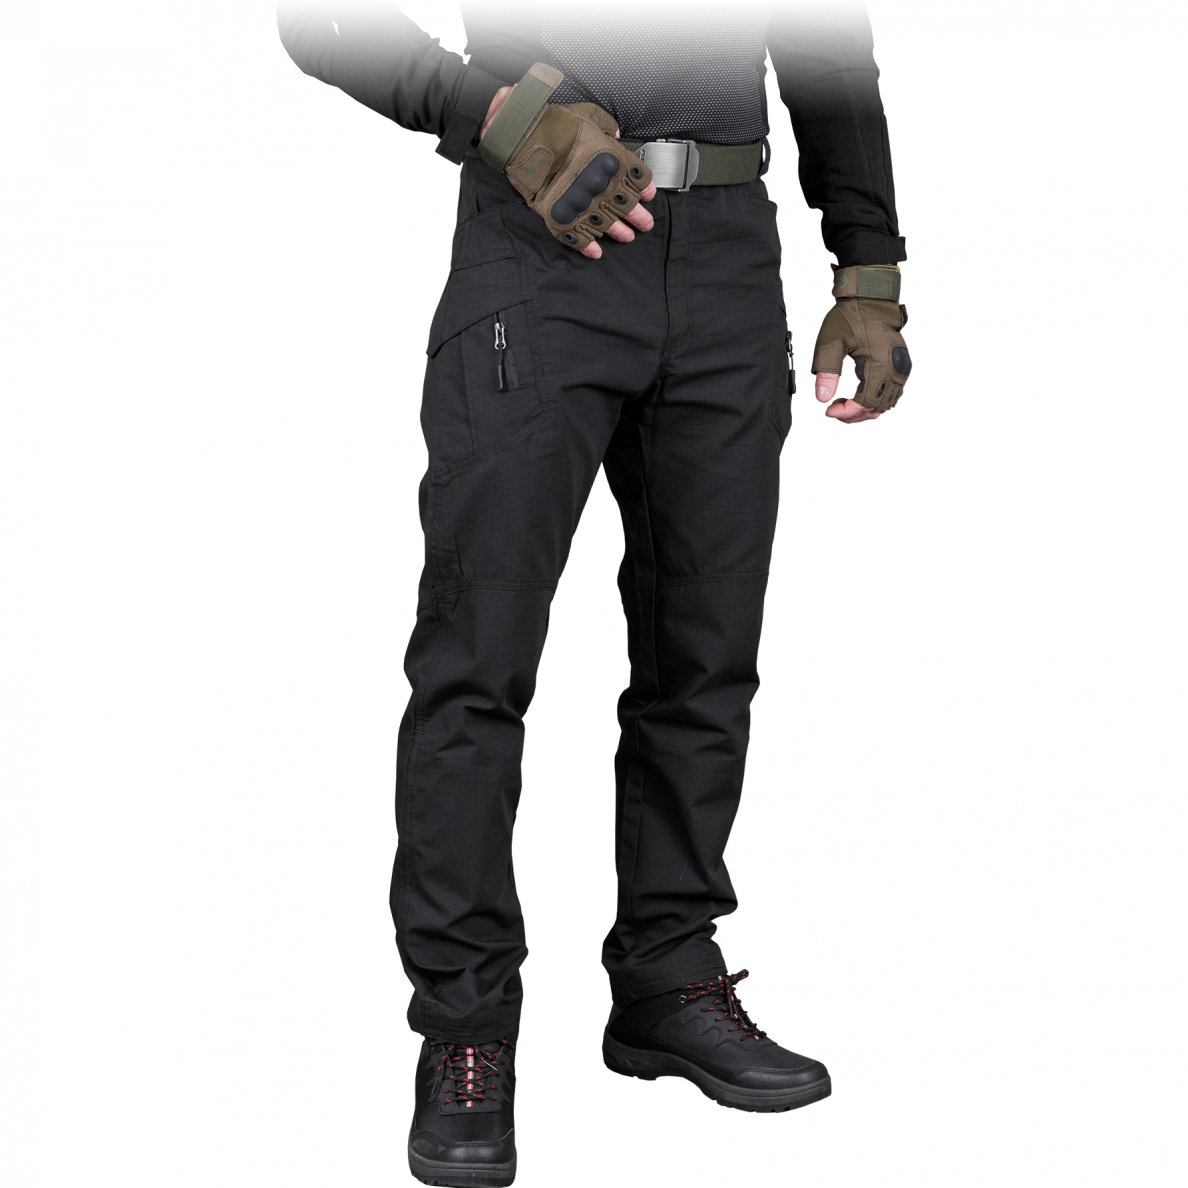 Taktinės kelnės GANS, juodos spalvos su kišenėmis šonuose ant kojų šlaunų srityje. Geriausia kaina